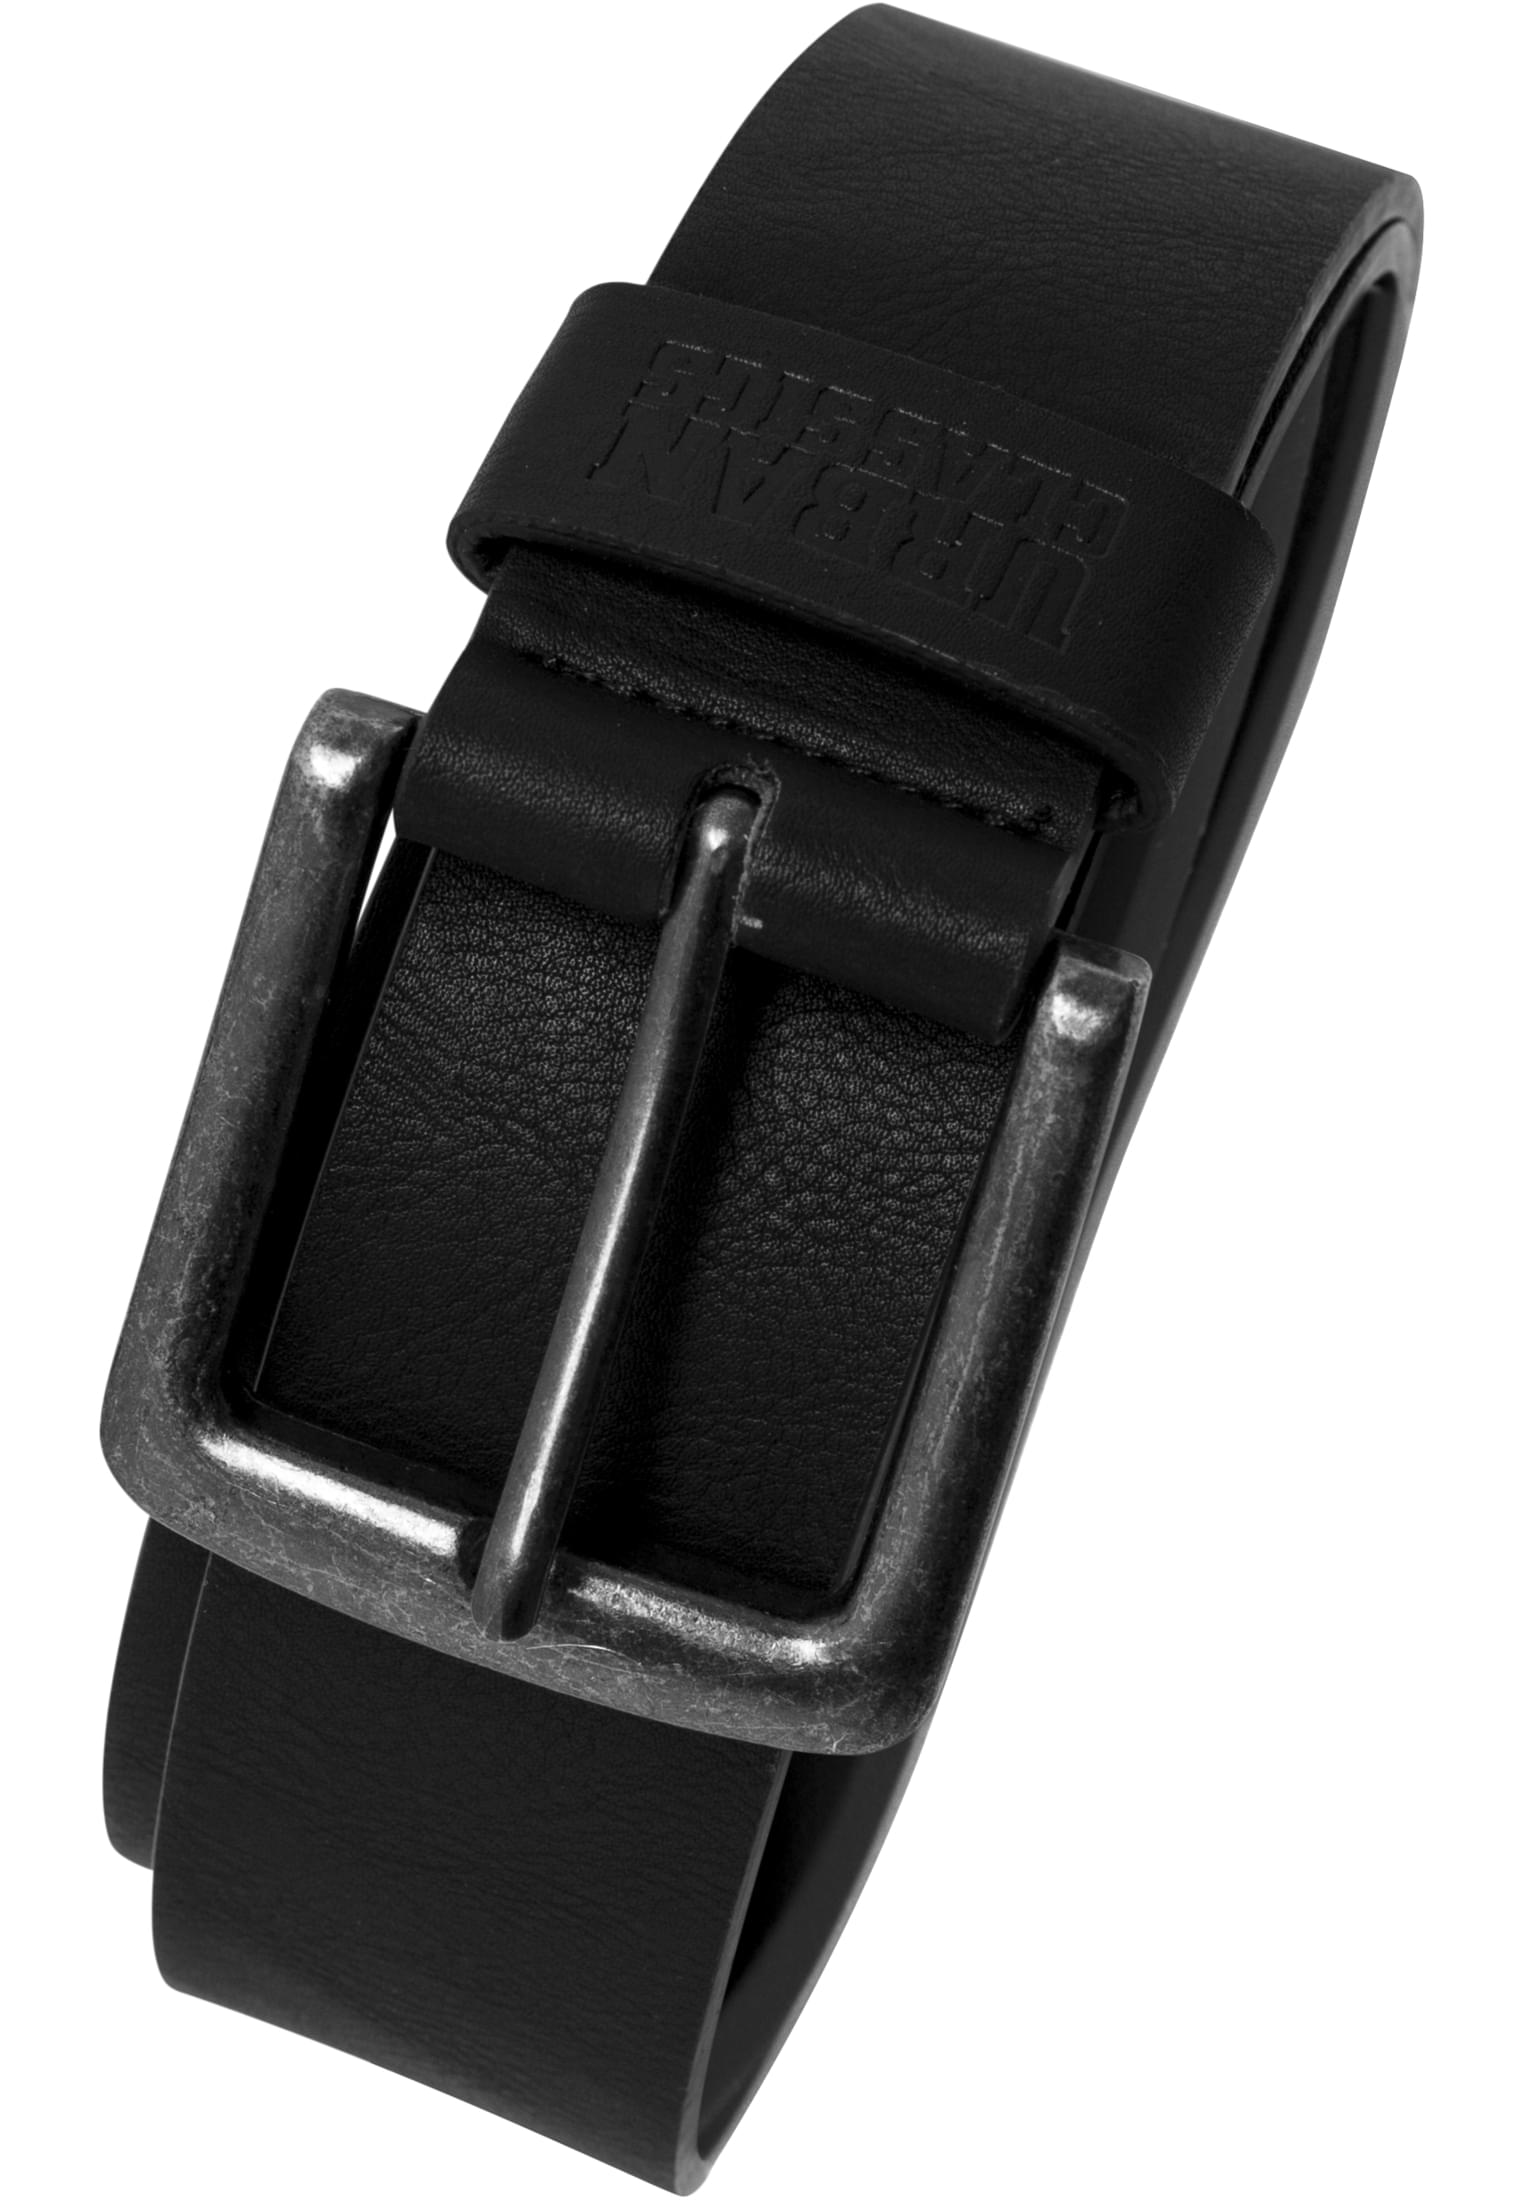 Black imitation leather belt